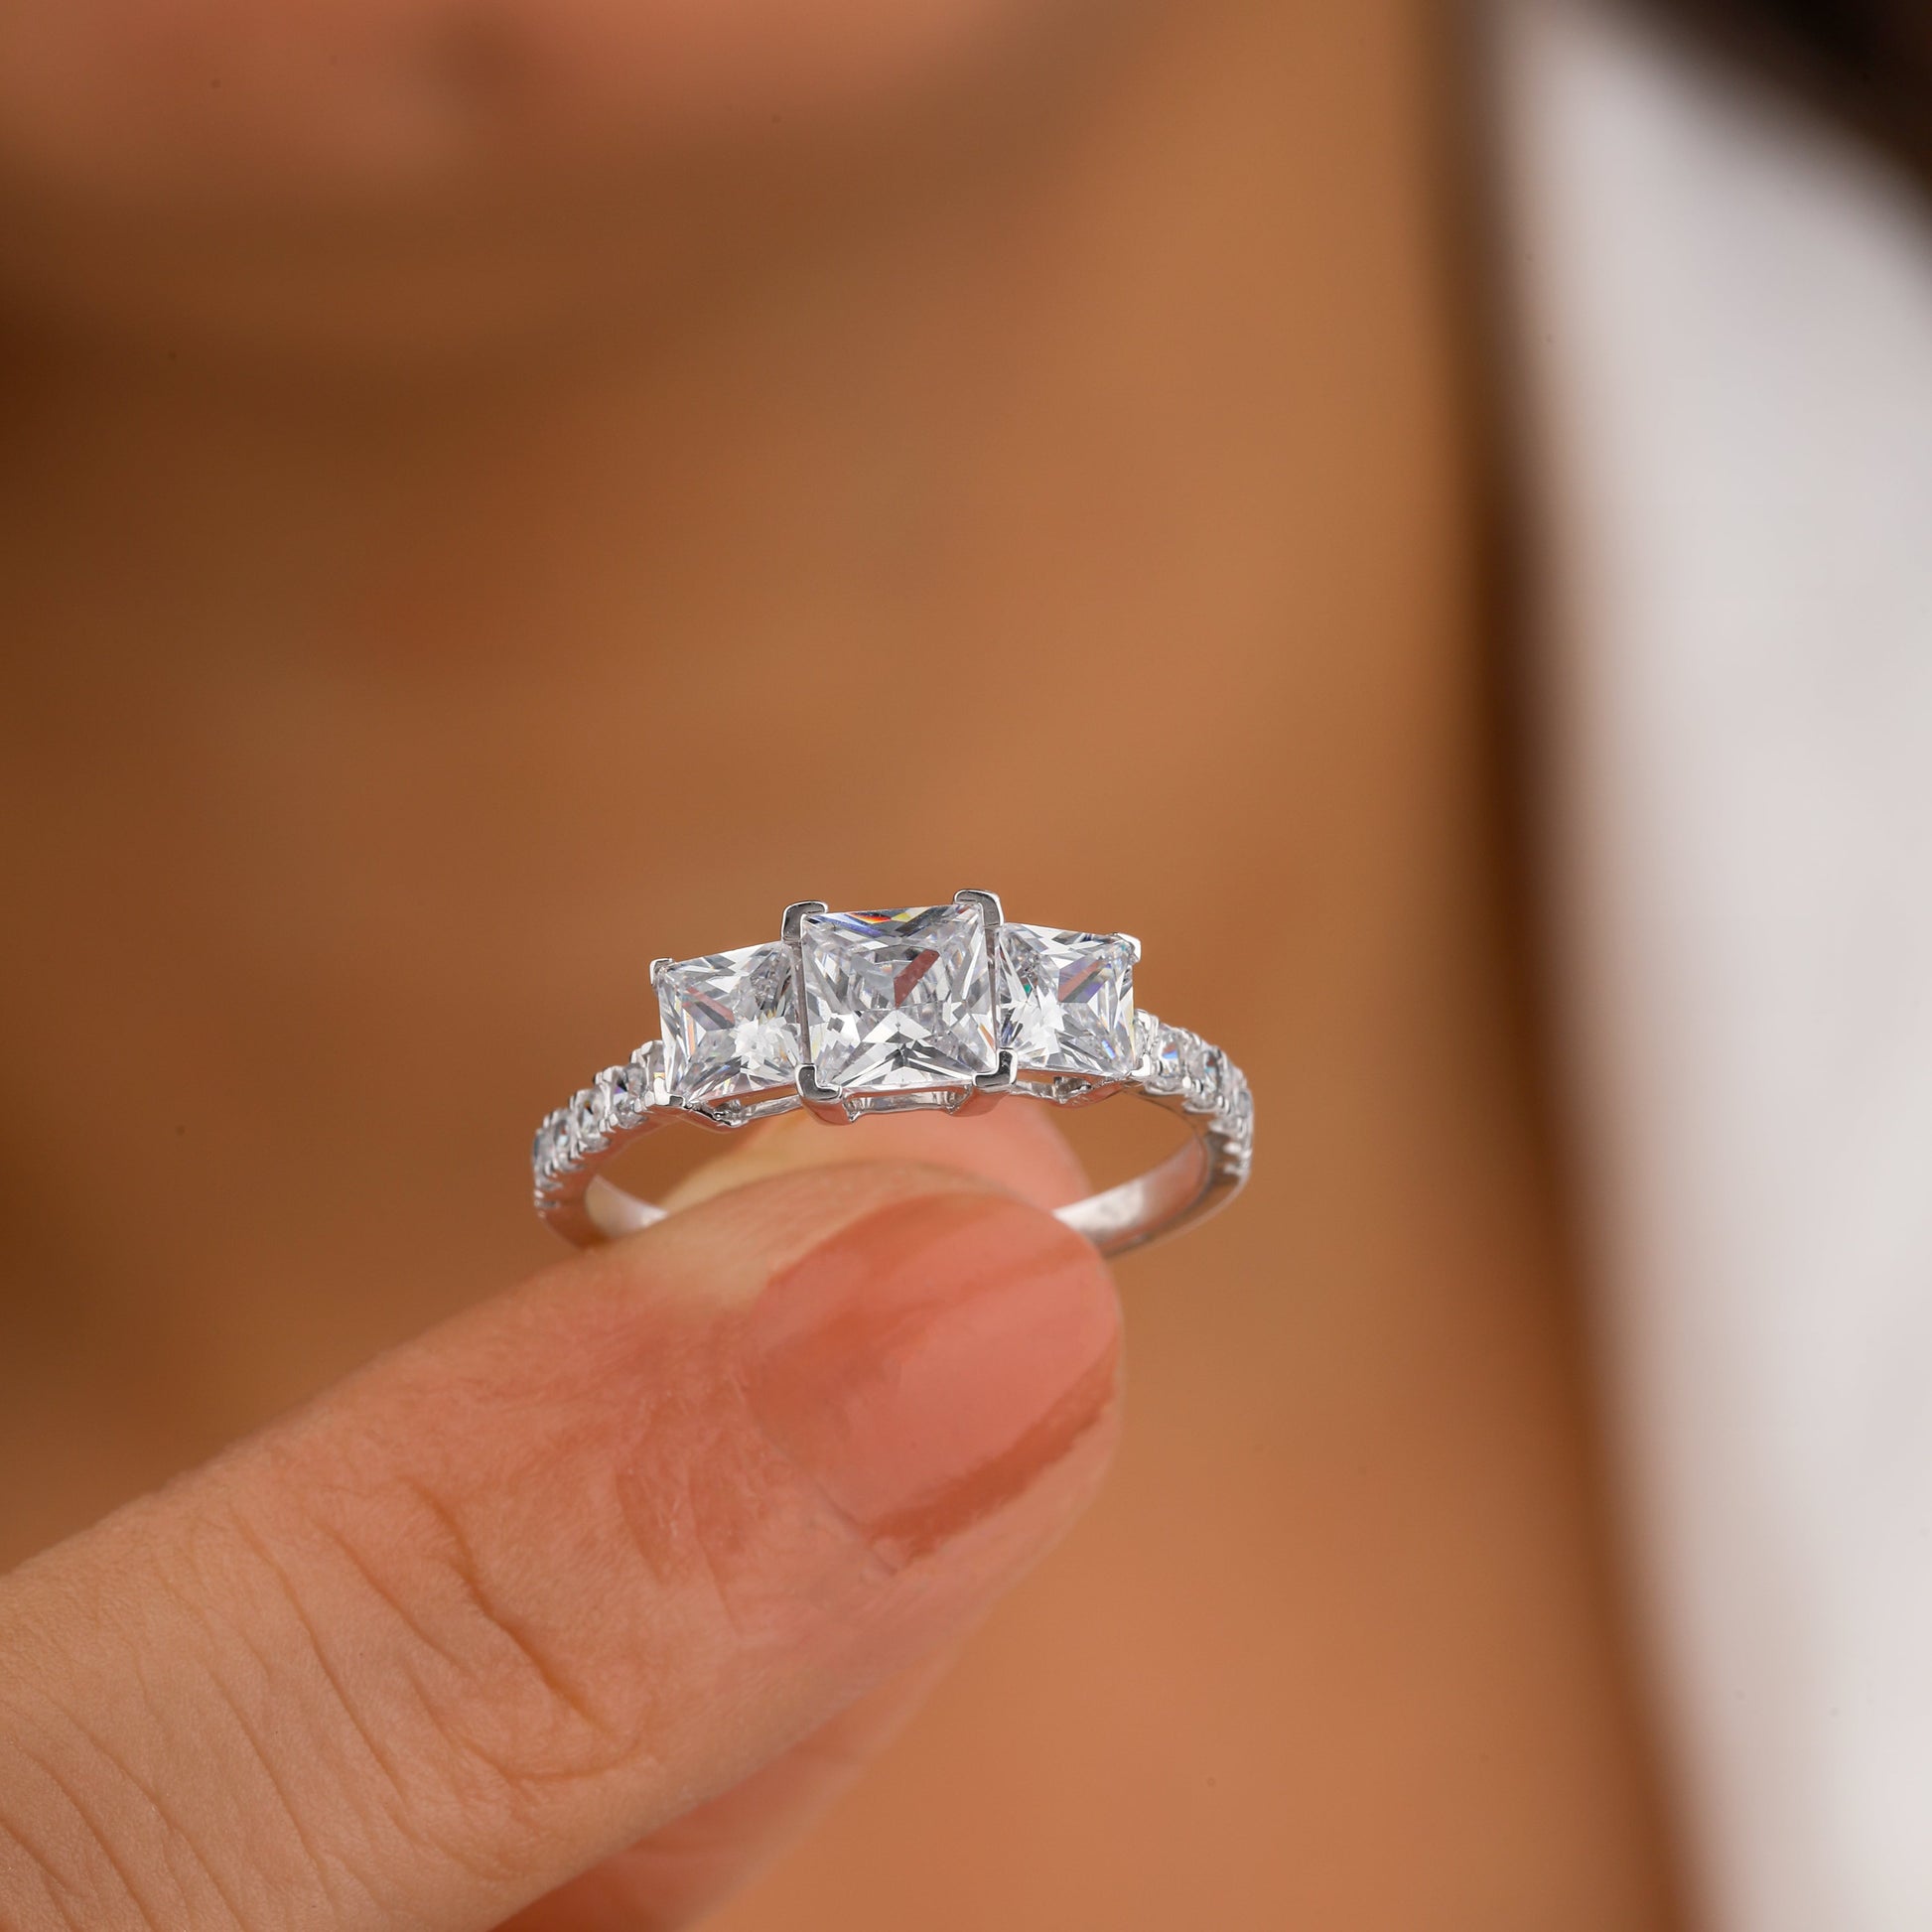 Moissanite engagement ring in white gold